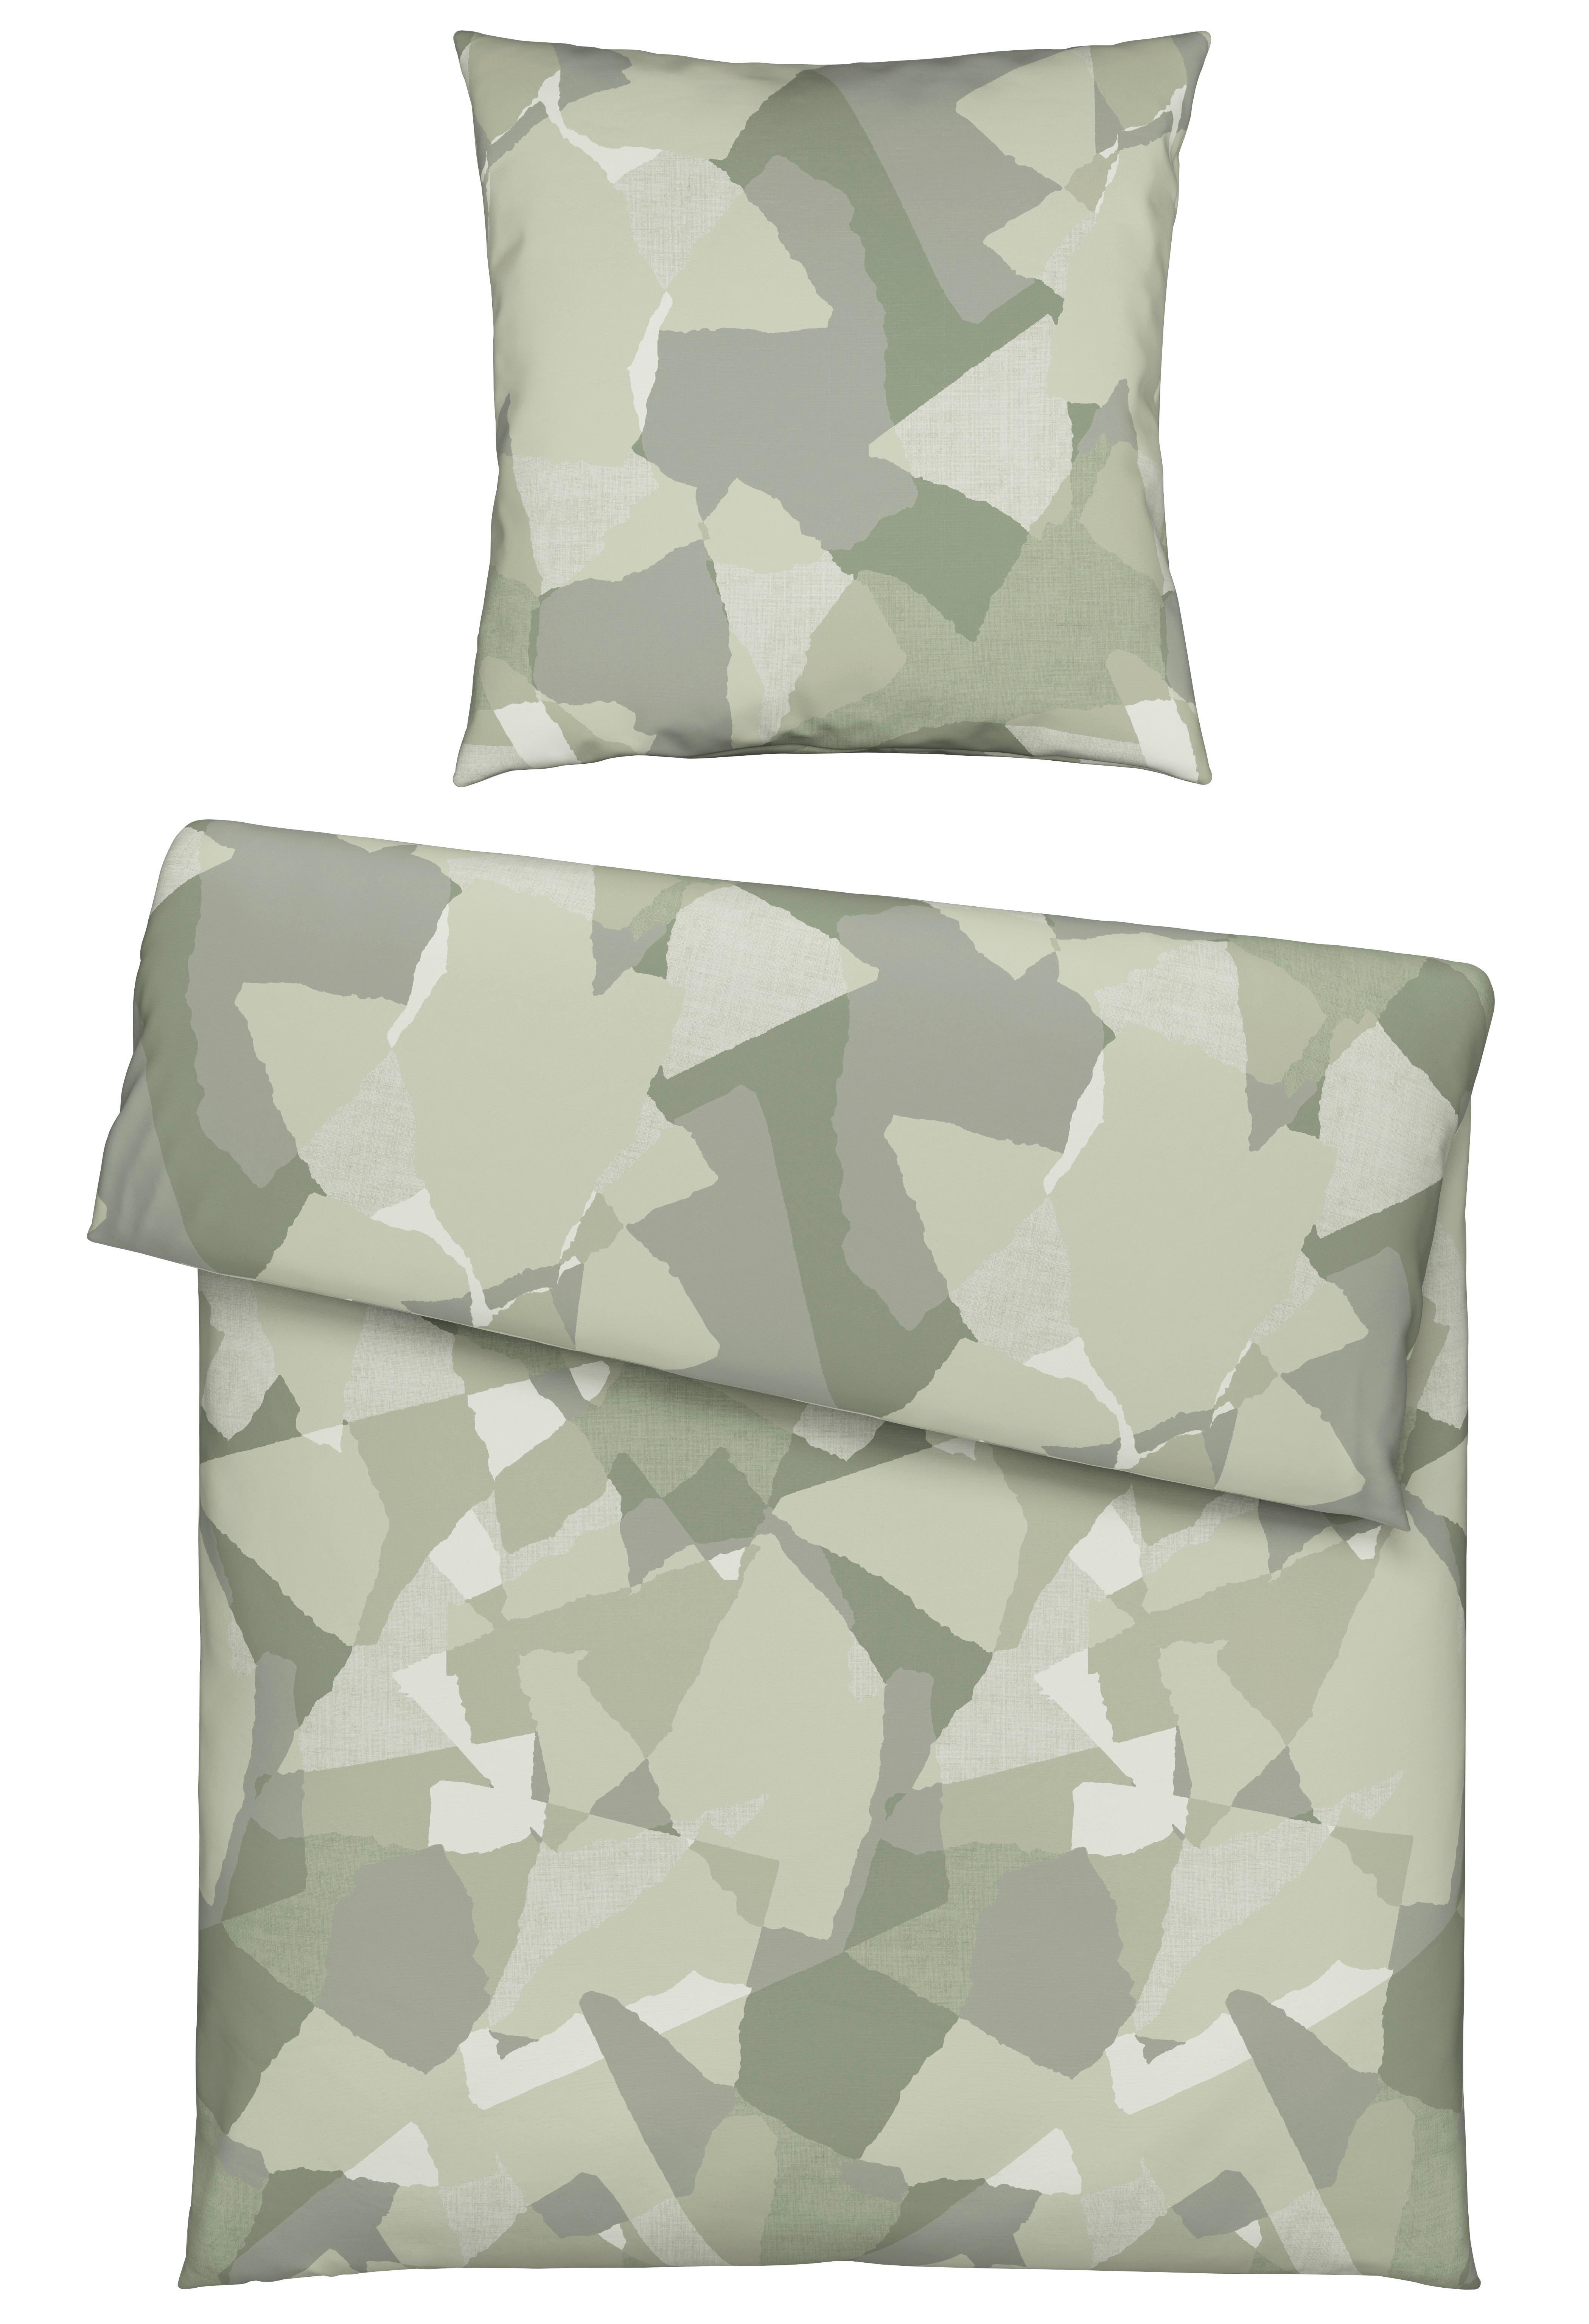 Bettwäsche Armin in Camouflage ca. 135x200cm - Olivgrün, Textil (135/200cm) - Modern Living